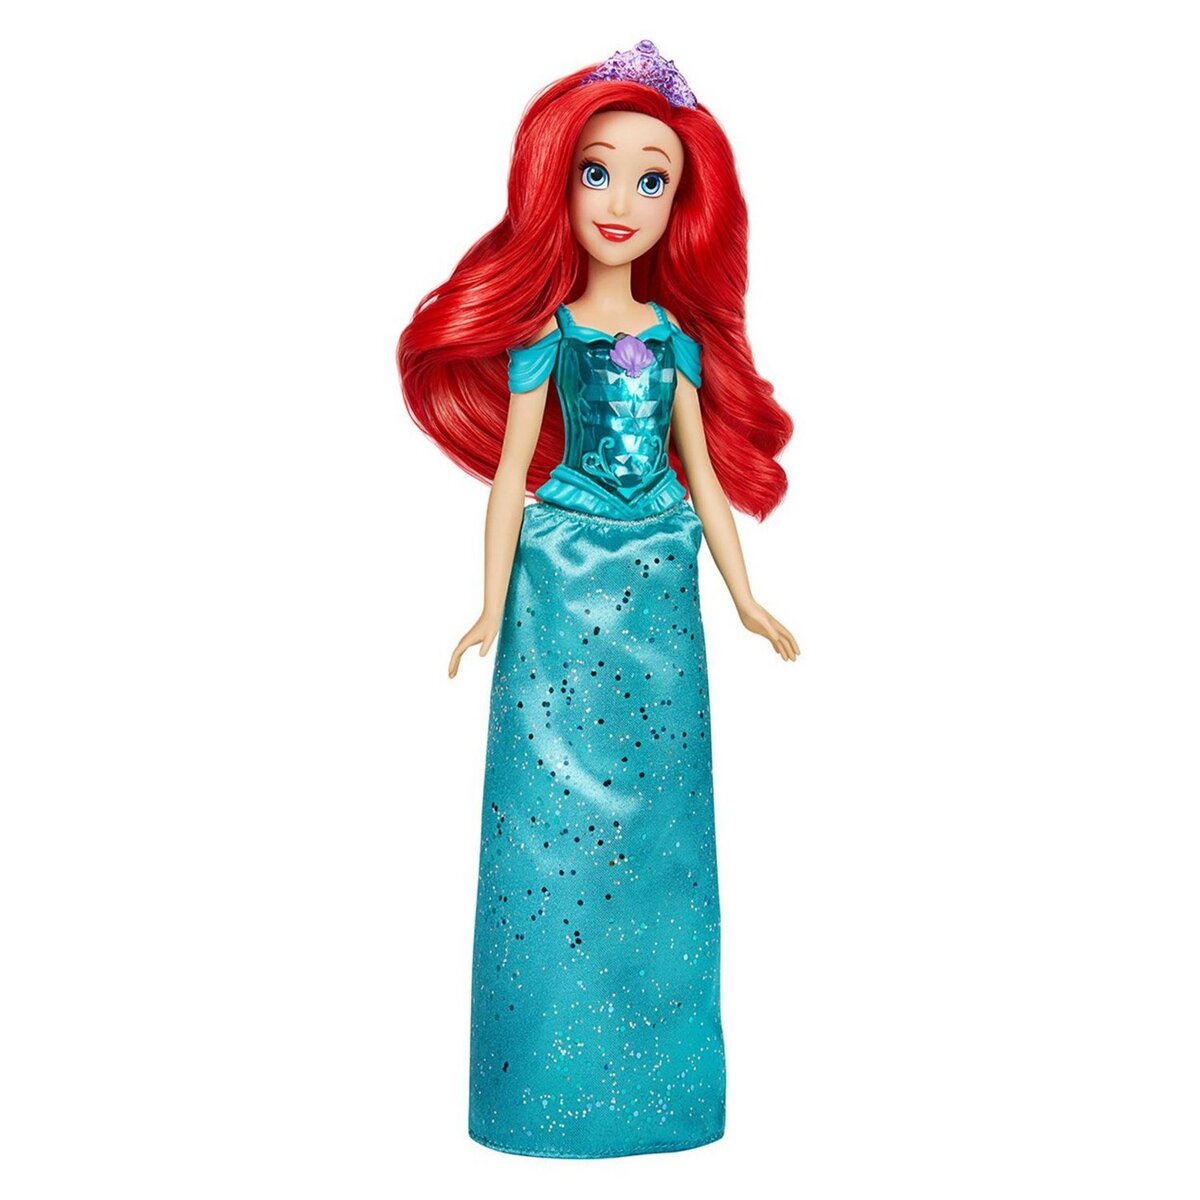 Disney Princesse Poupée Vaiana Royal Shimmer Hasbro